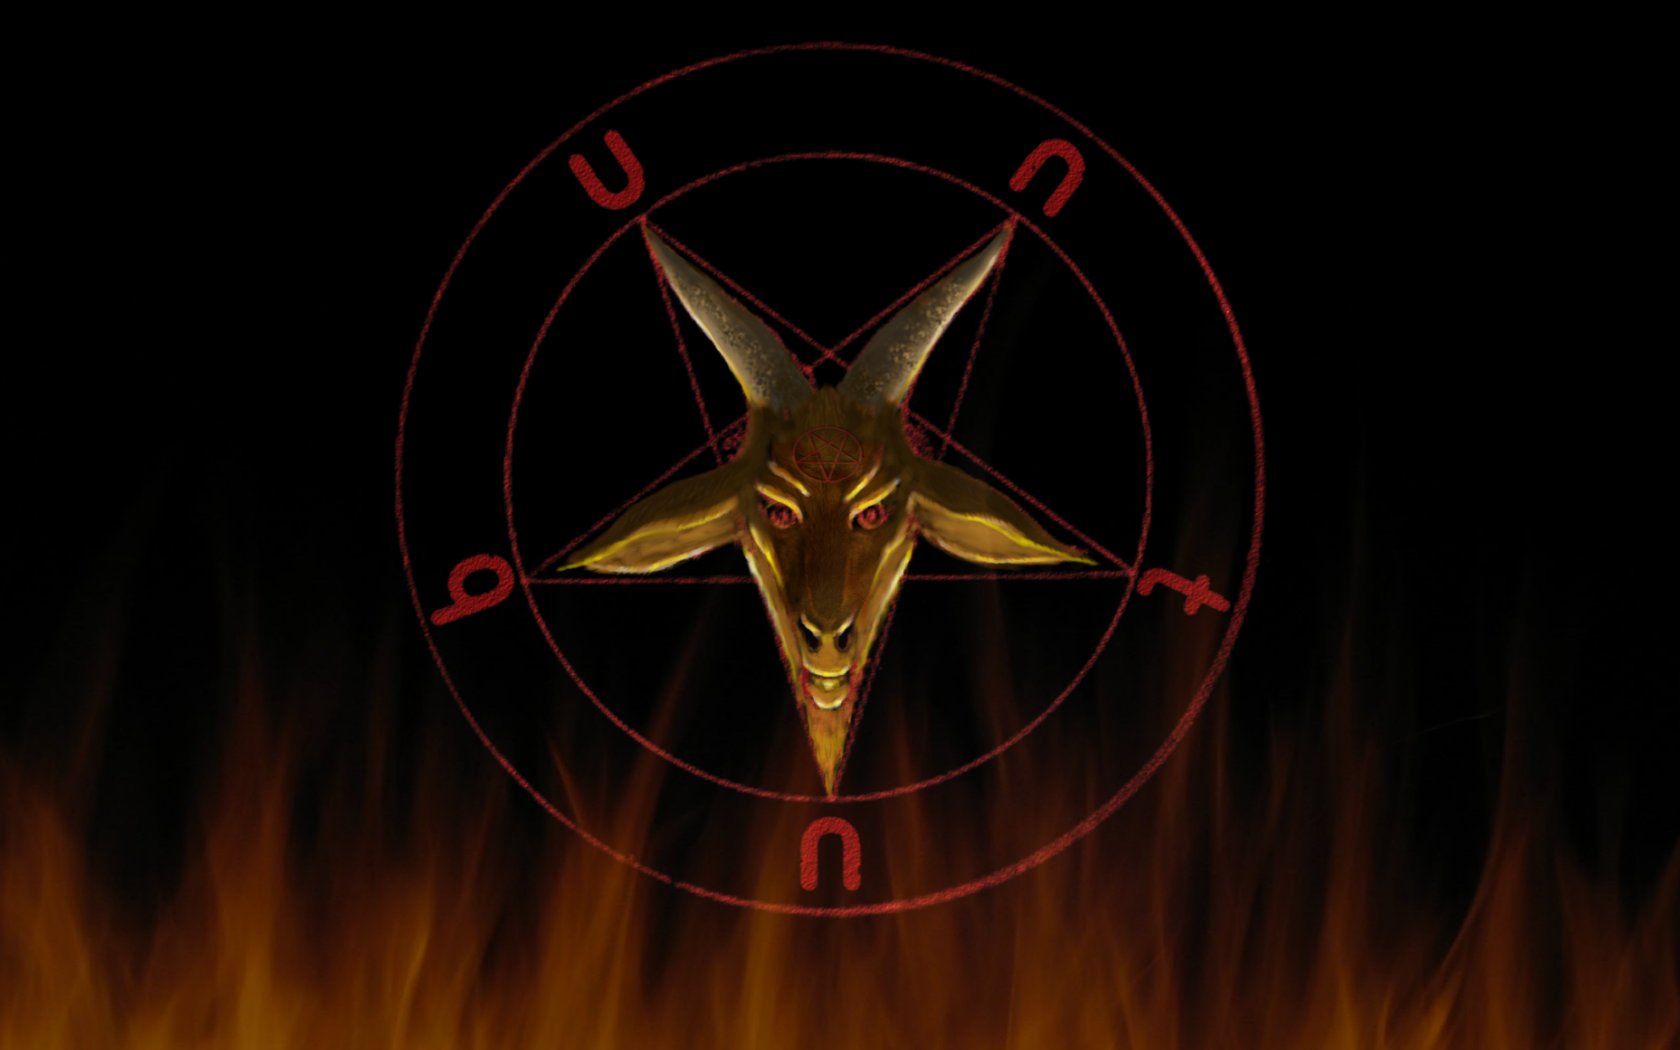 satanic, baphomet, satan, pagan, humor, satanism, dark, demon, occult Free Stock Photo